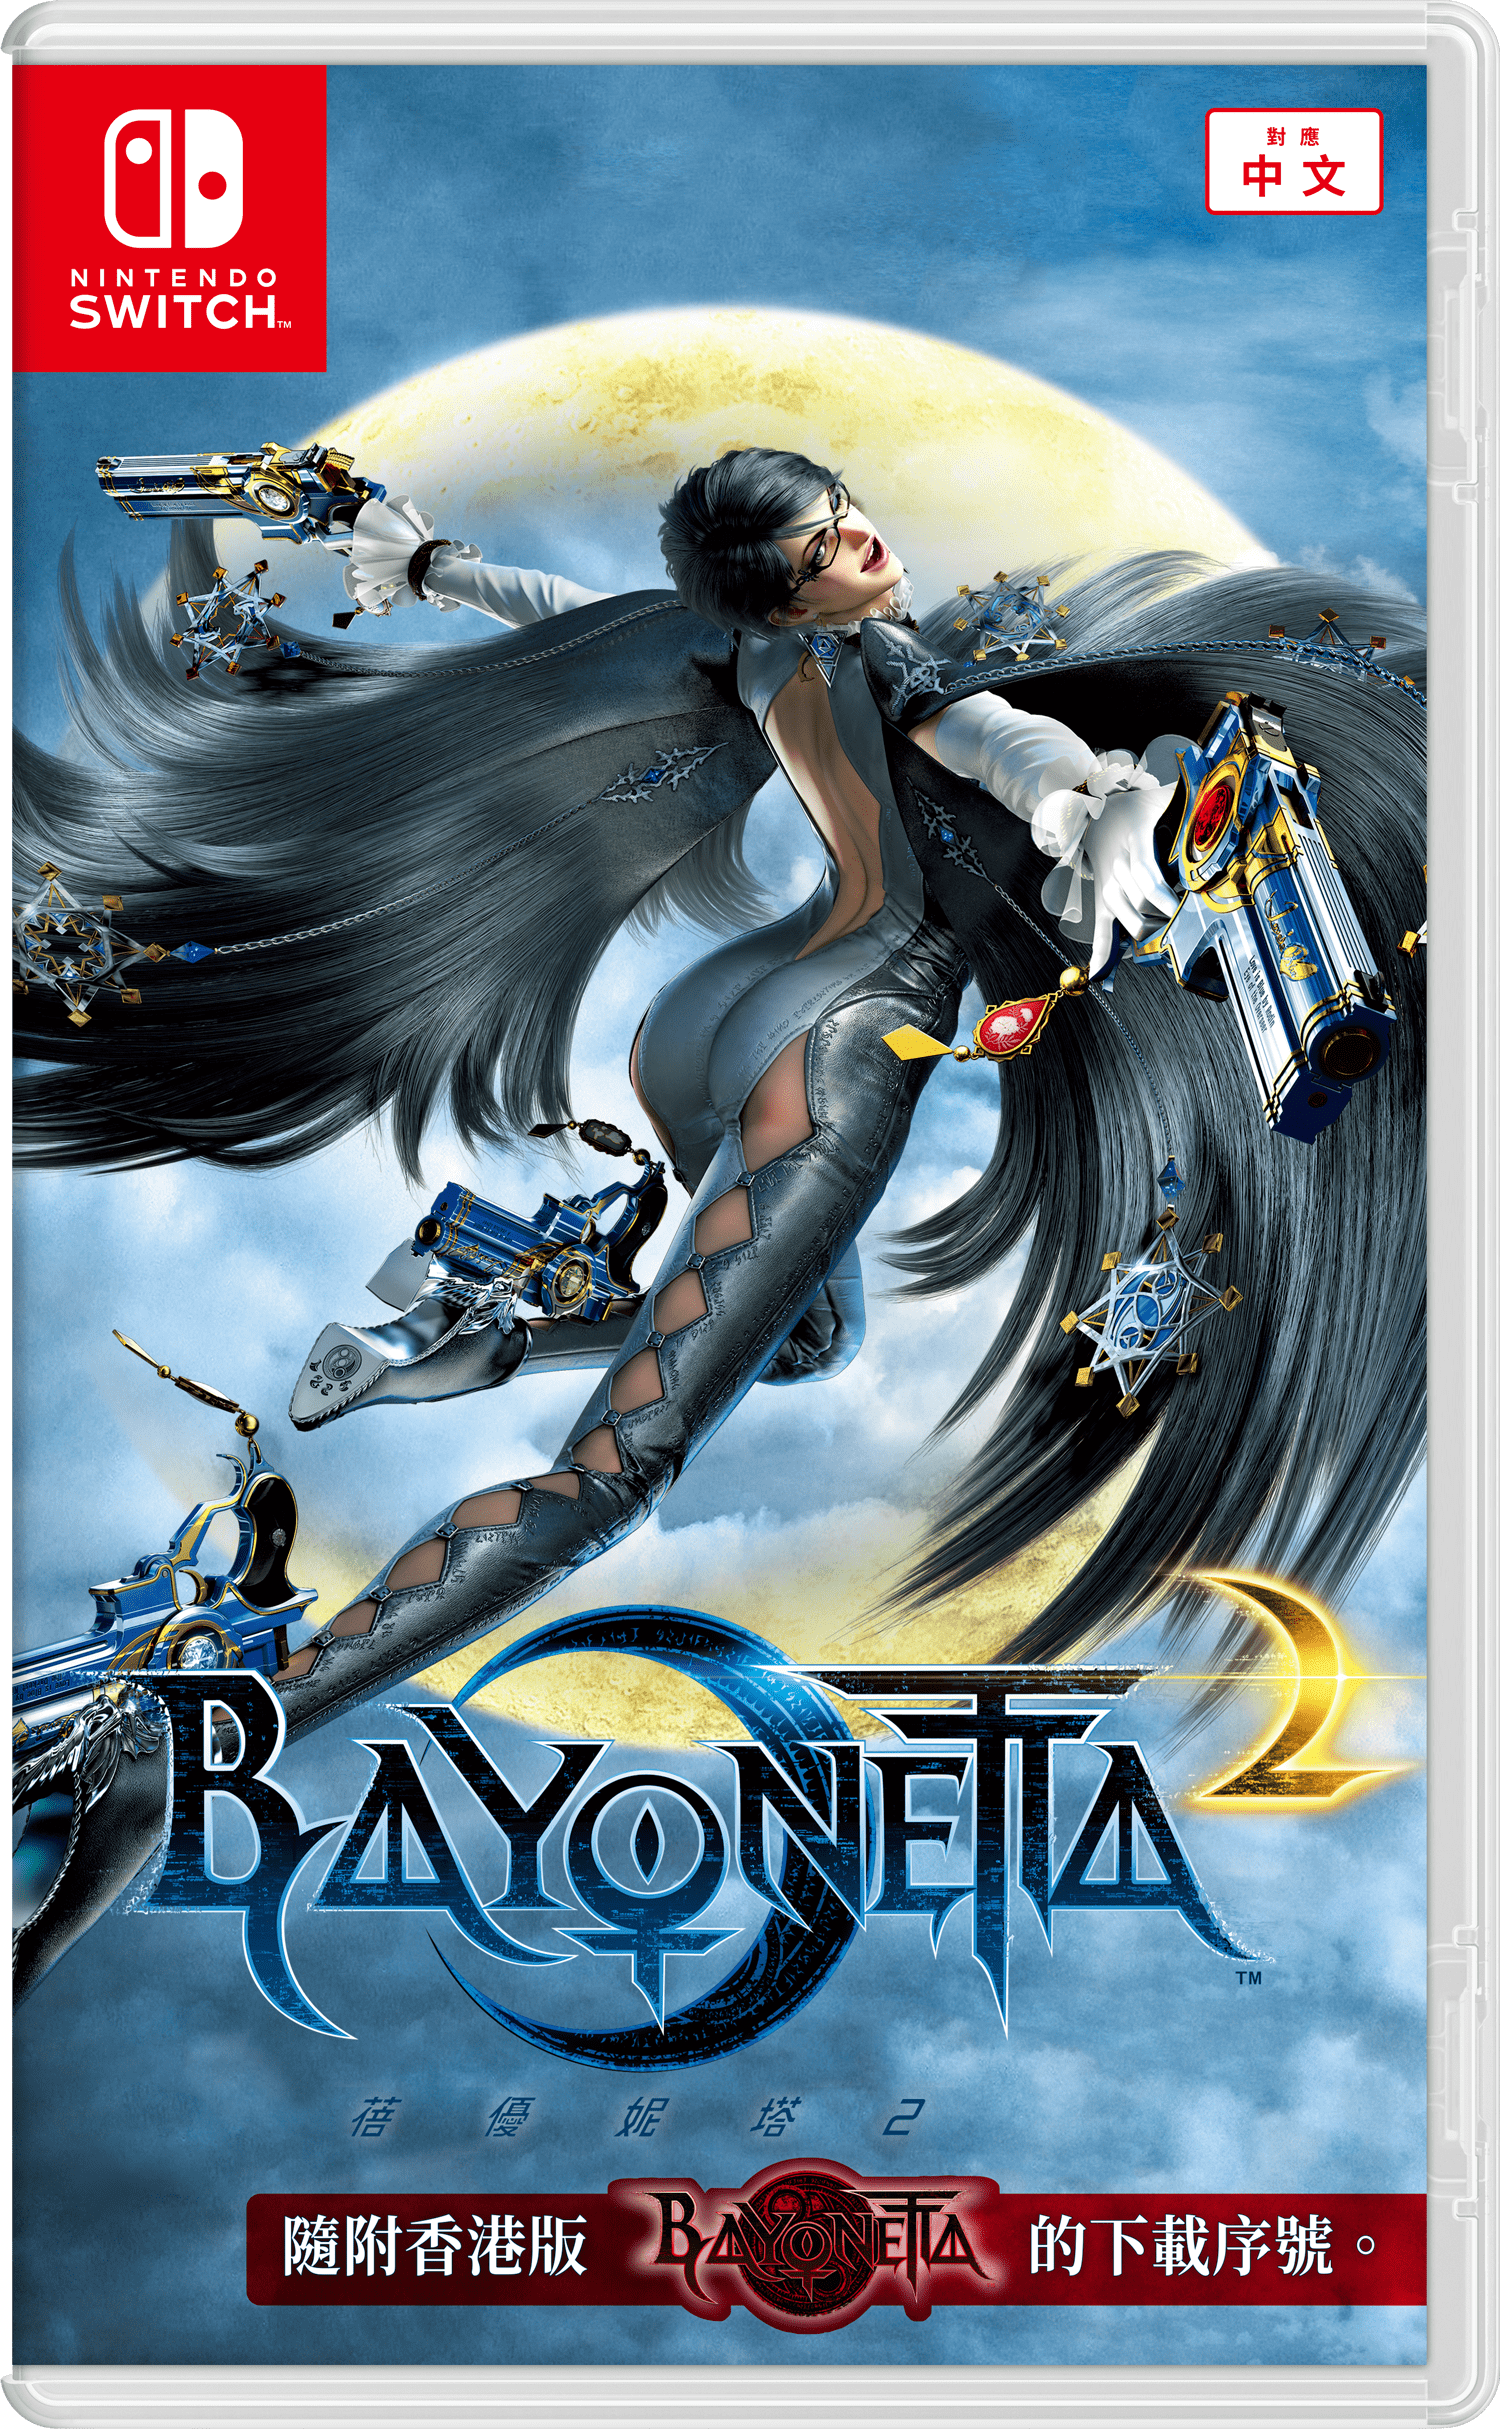 猎天使魔女 Bayonetta 的游戏图片 - 奶牛关